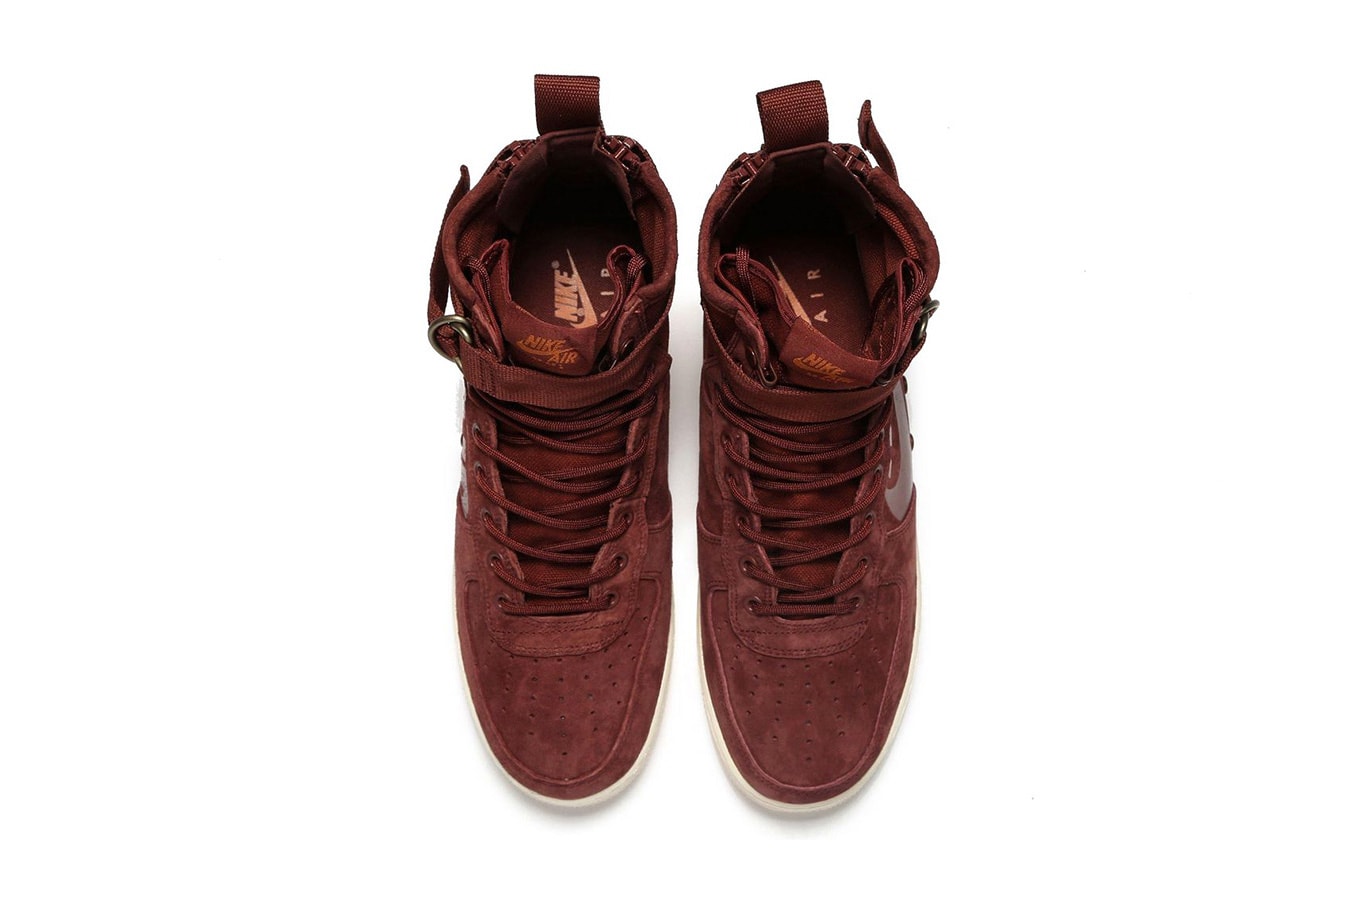 Nike SF-AF1 Mid Burgundy Release info purchase price summer colorway sneaker footwear